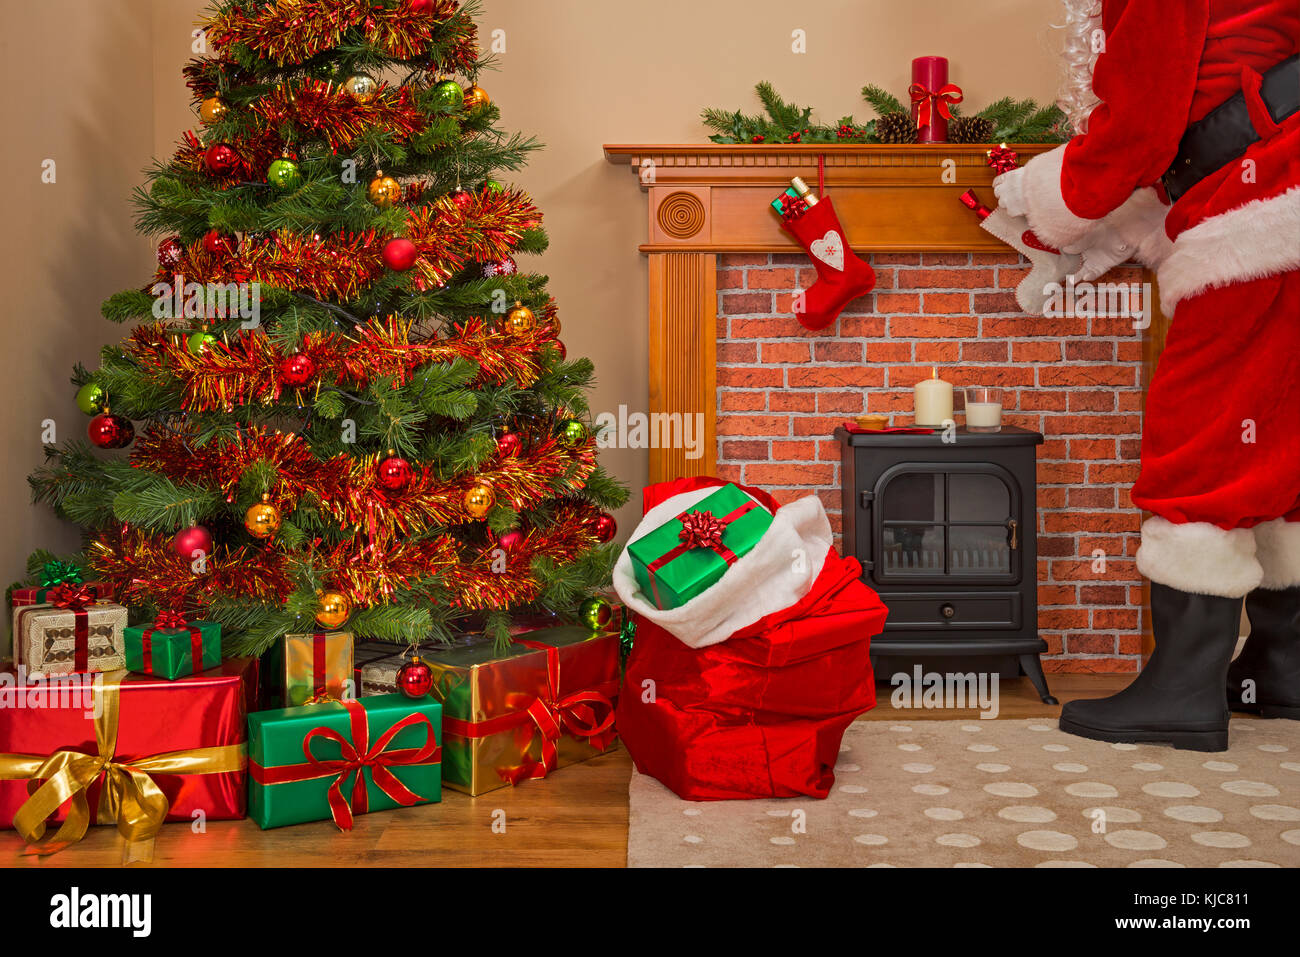 Weihnachtsmann mit Geschenk Geschenke unter dem Baum am Heiligabend mit einem Sack voller Spielzeug für Mädchen und Jungen gut verpackt. Stockfoto